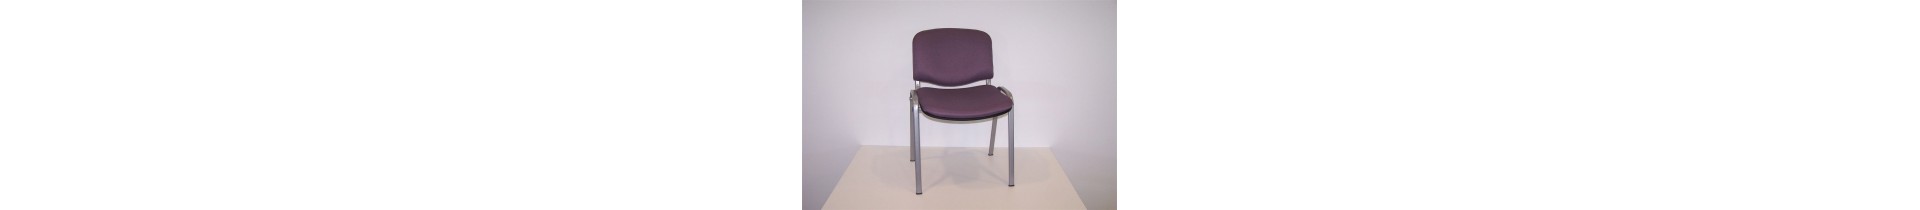 Chair type Isosceles